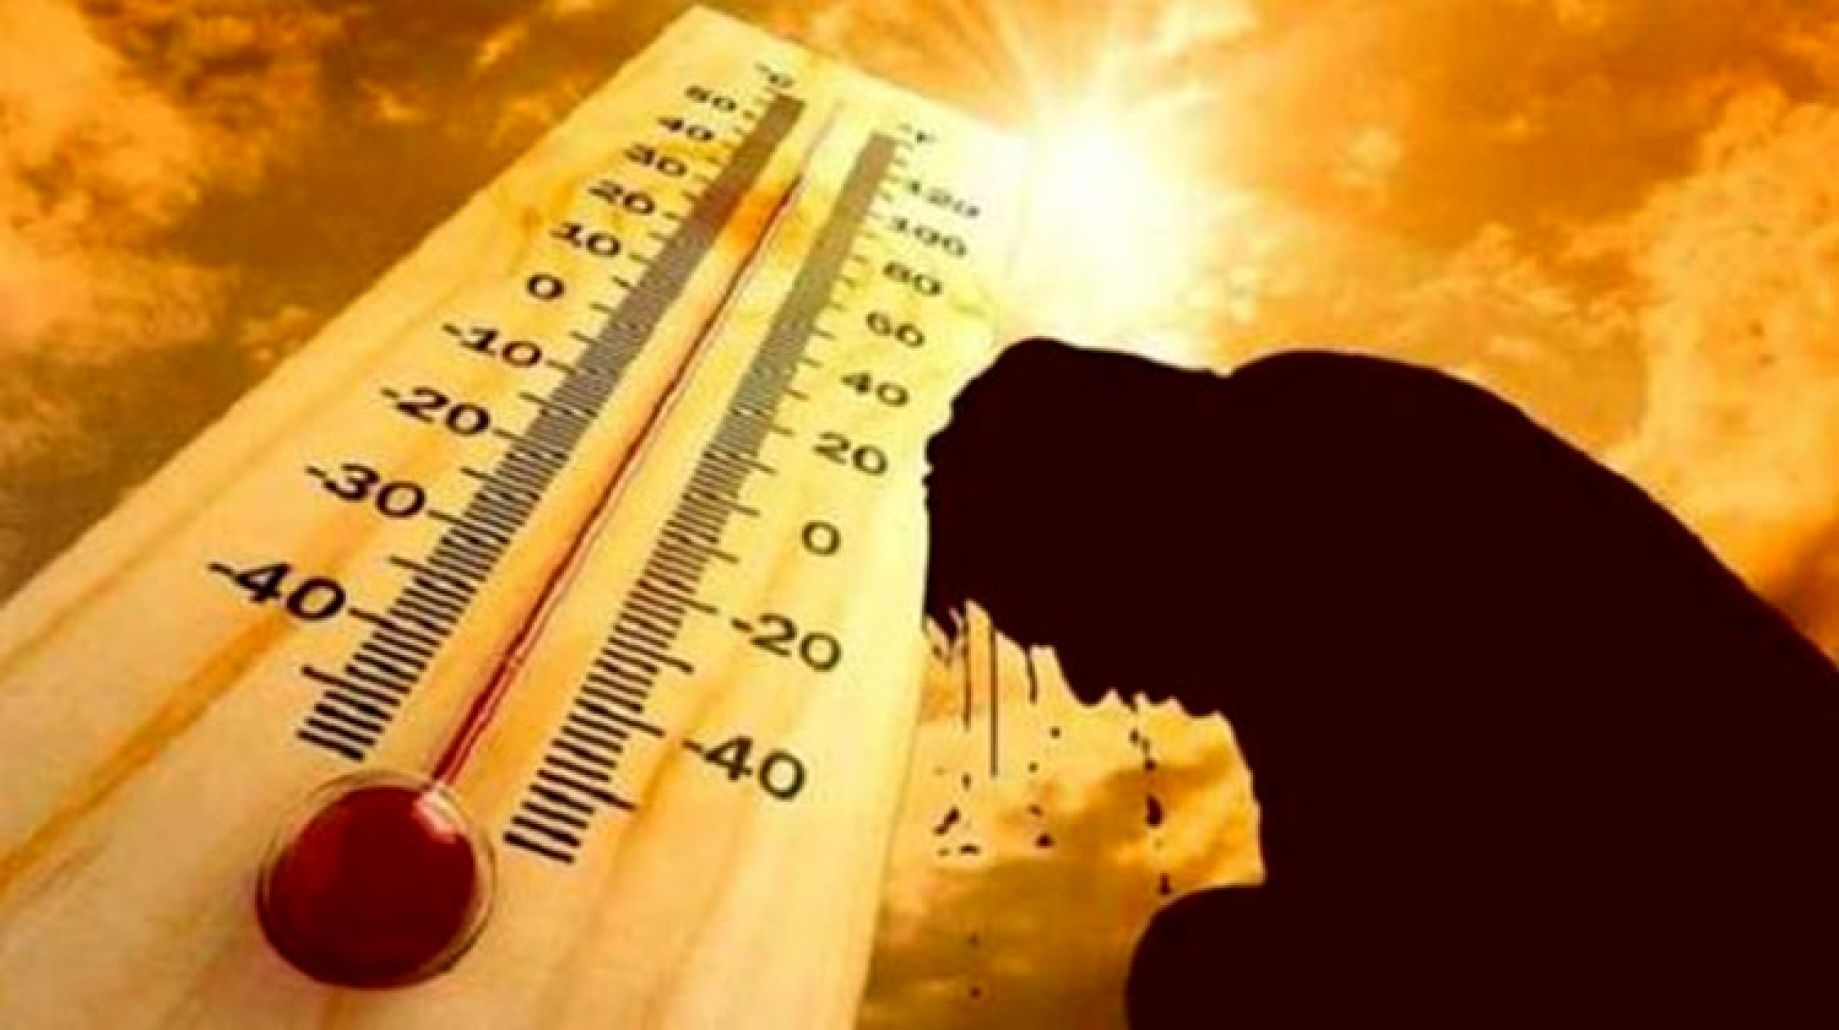 توقعات أن تلامس درجات الحرارة  الـ 40 يومي الخميس والجمعة